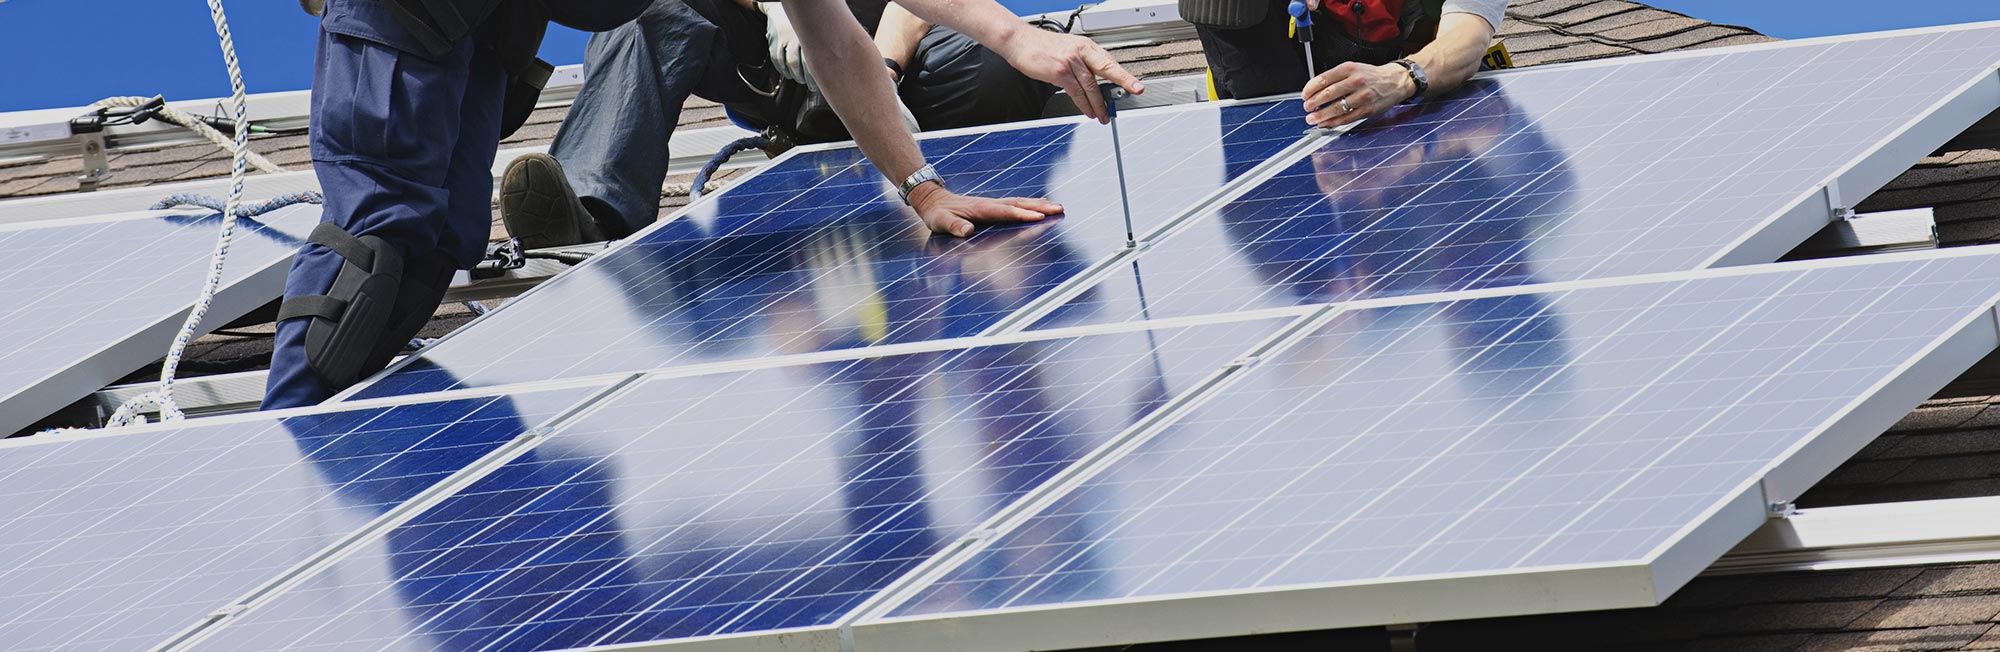 Fotovoltaický rozbočovač Sunpulse SMC4Y je určený pro venkovní prostředí a kabeláže solárních aplikací.